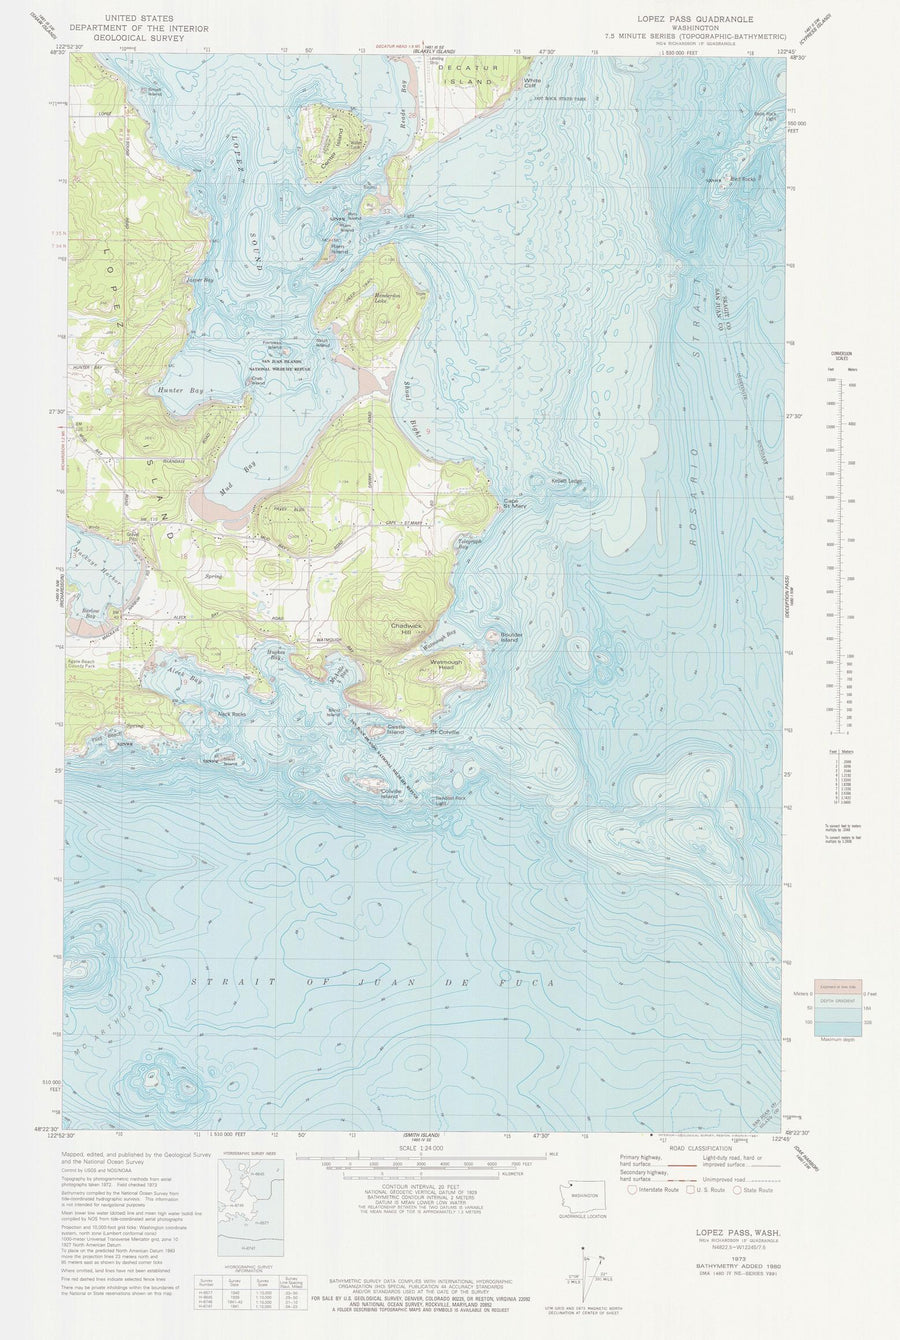 Lopez Pass WA Map - 1973